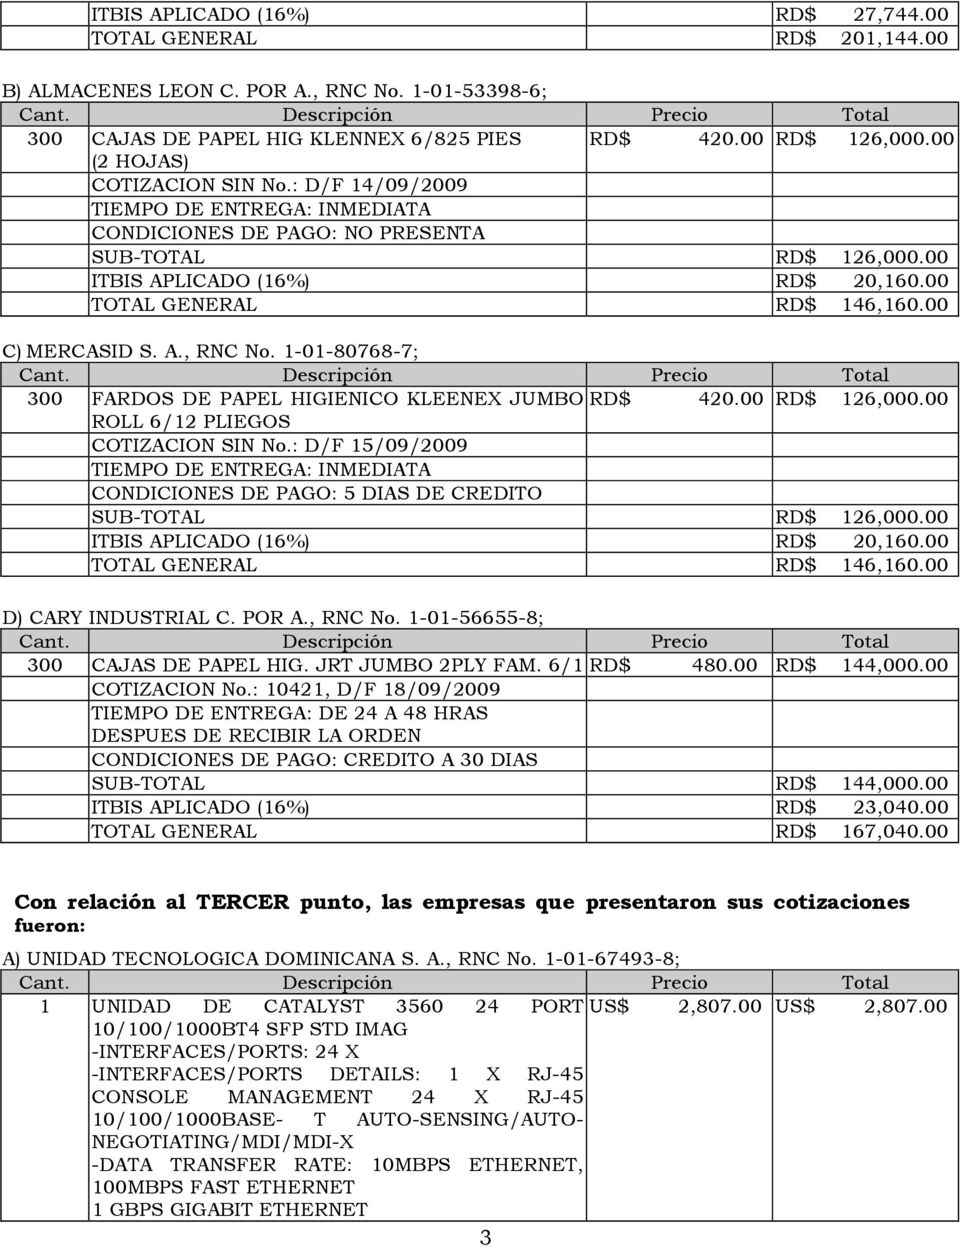 1-01-80768-7; 300 FARDOS DE PAPEL HIGIENICO KLEENEX JUMBO RD$ 420.00 RD$ 126,000.00 ROLL 6/12 PLIEGOS COTIZACION SIN No.: D/F 15/09/2009 CONDICIONES DE PAGO: 5 DIAS DE CREDITO SUB-TOTAL RD$ 126,000.